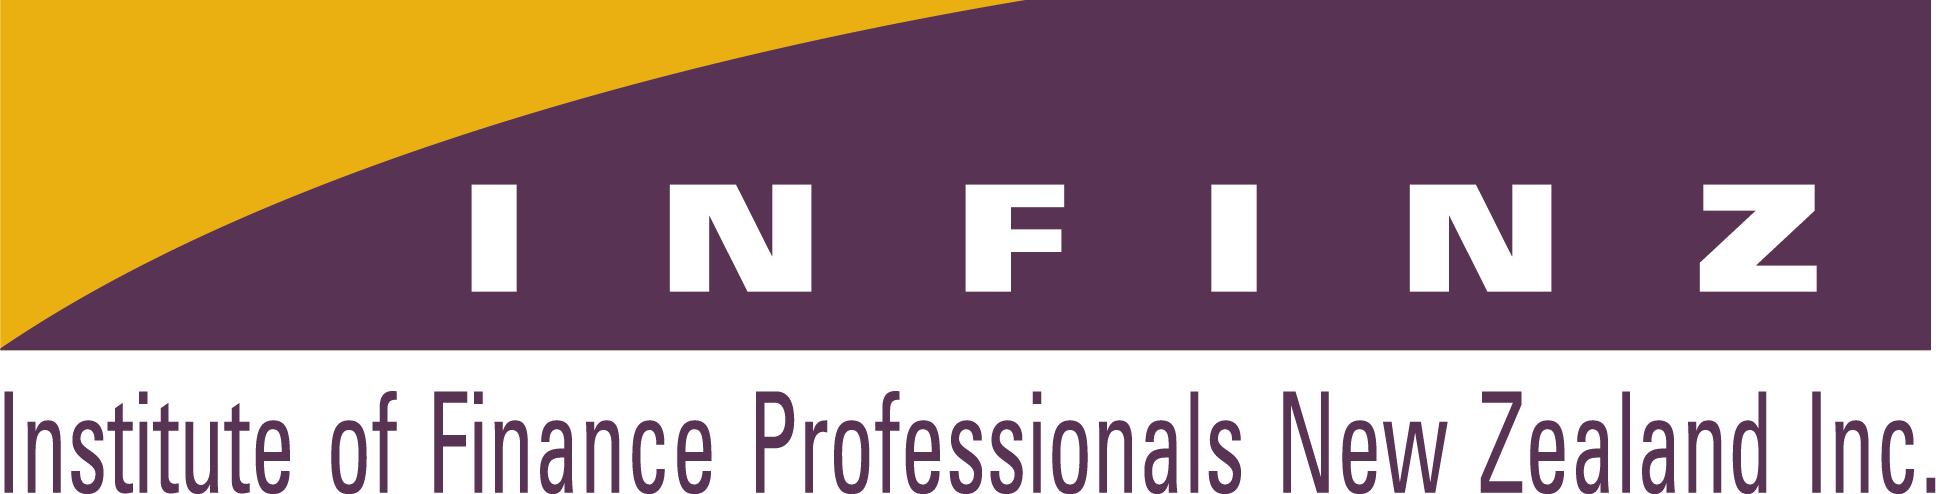 INFINZ Logo